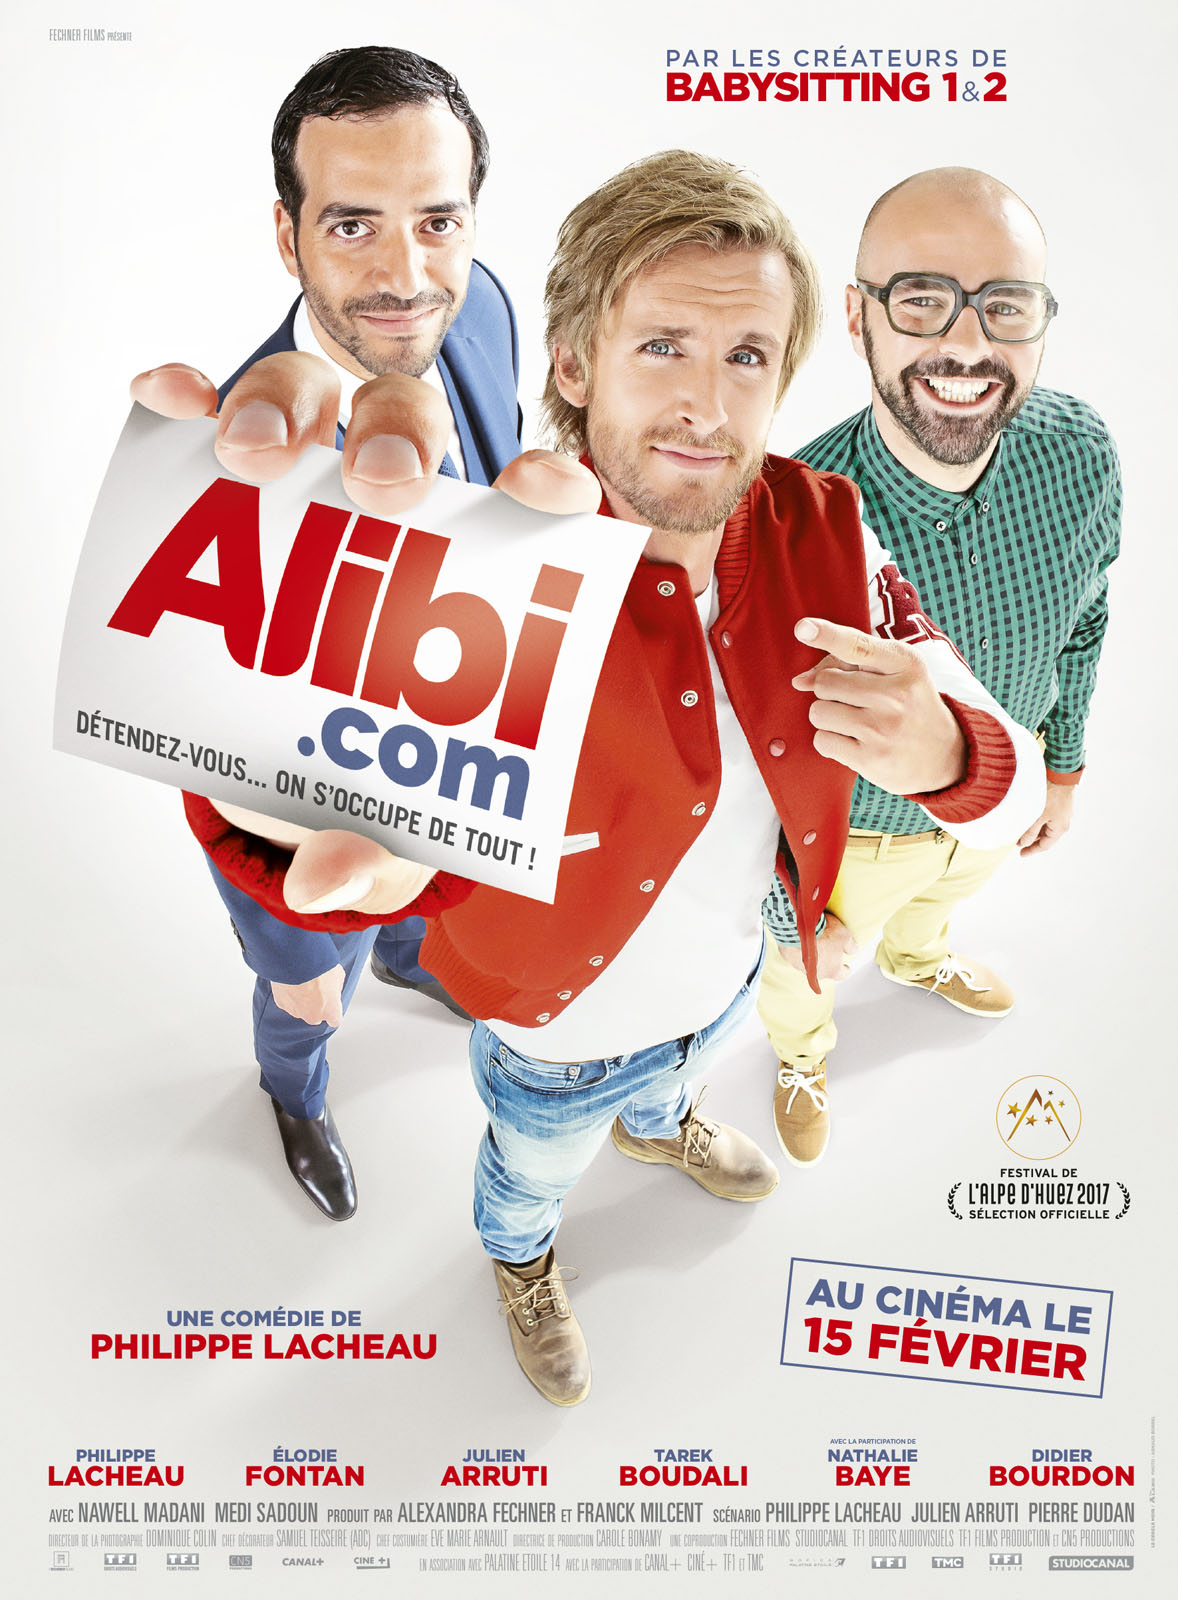 Alibi . com